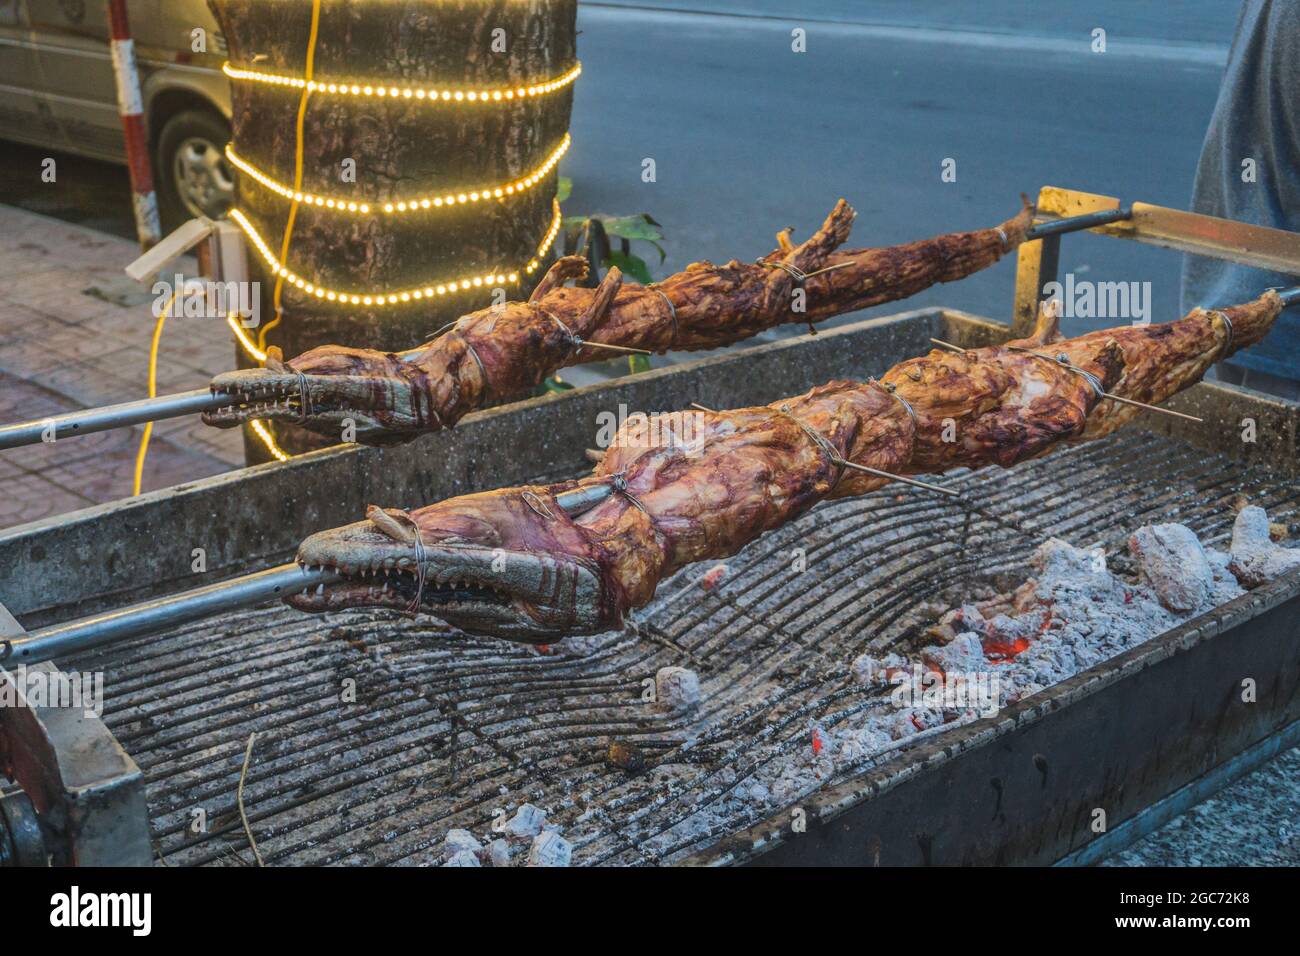 Gegrilltes Krokodil am offenen Feuer im Sea Food Restaurant, exotische Mahlzeiten in Vietnam, Speisen der asiatischen Küche, rohes Krokodilfleisch, exotische Speisen. Stockfoto